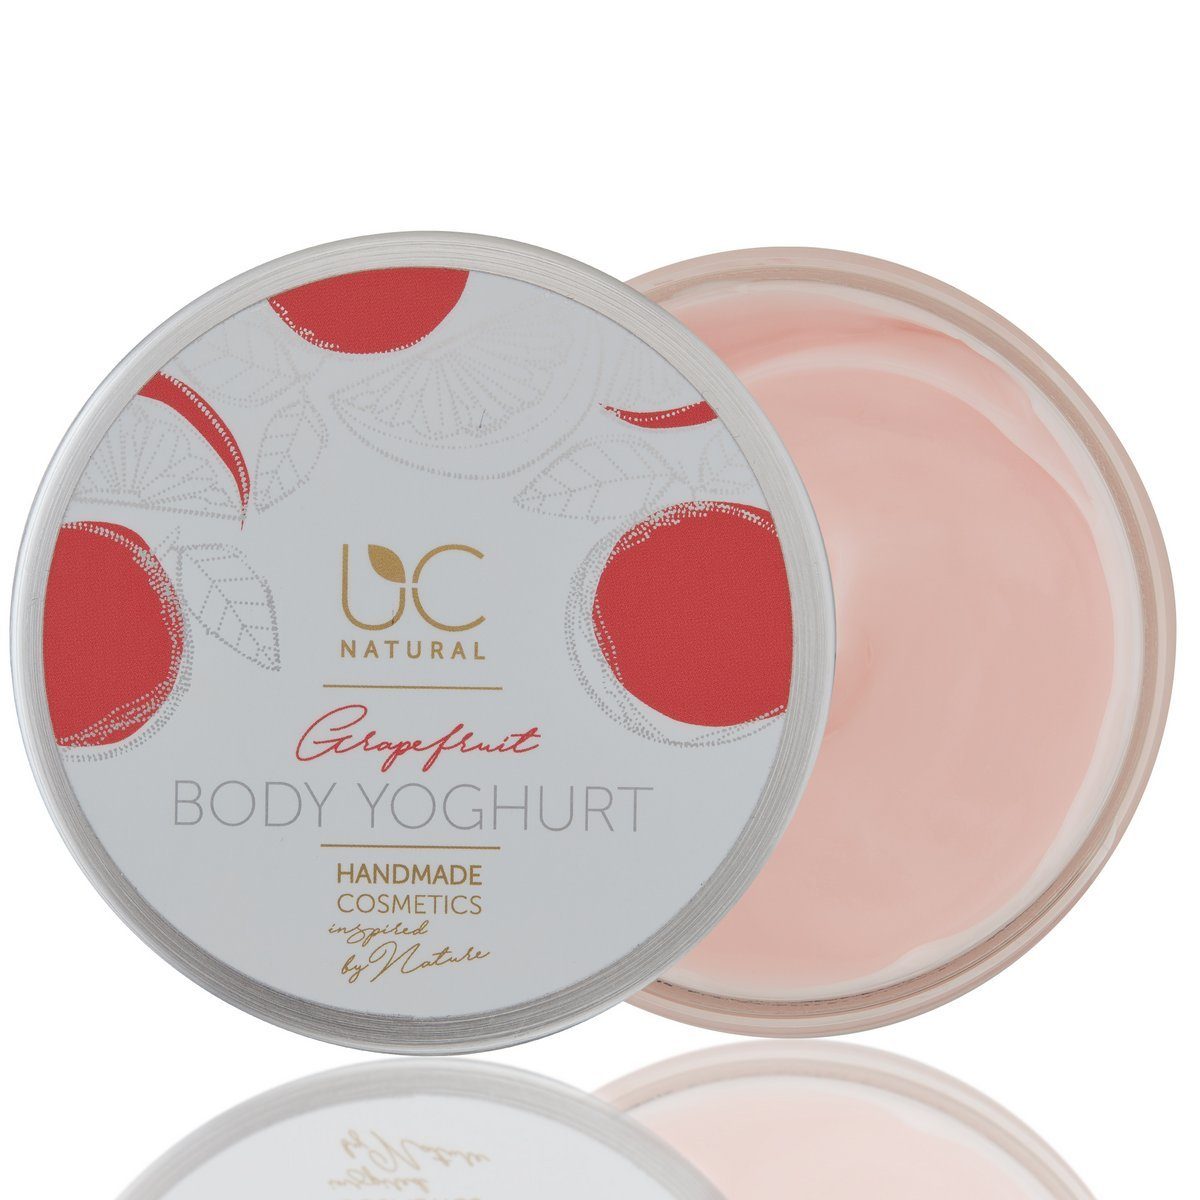 UC Natural Körpercreme UC Natural Body Yoghurt Set, 1-tlg., Grapefruit Body Yoghurt handgemacht 220g vegan